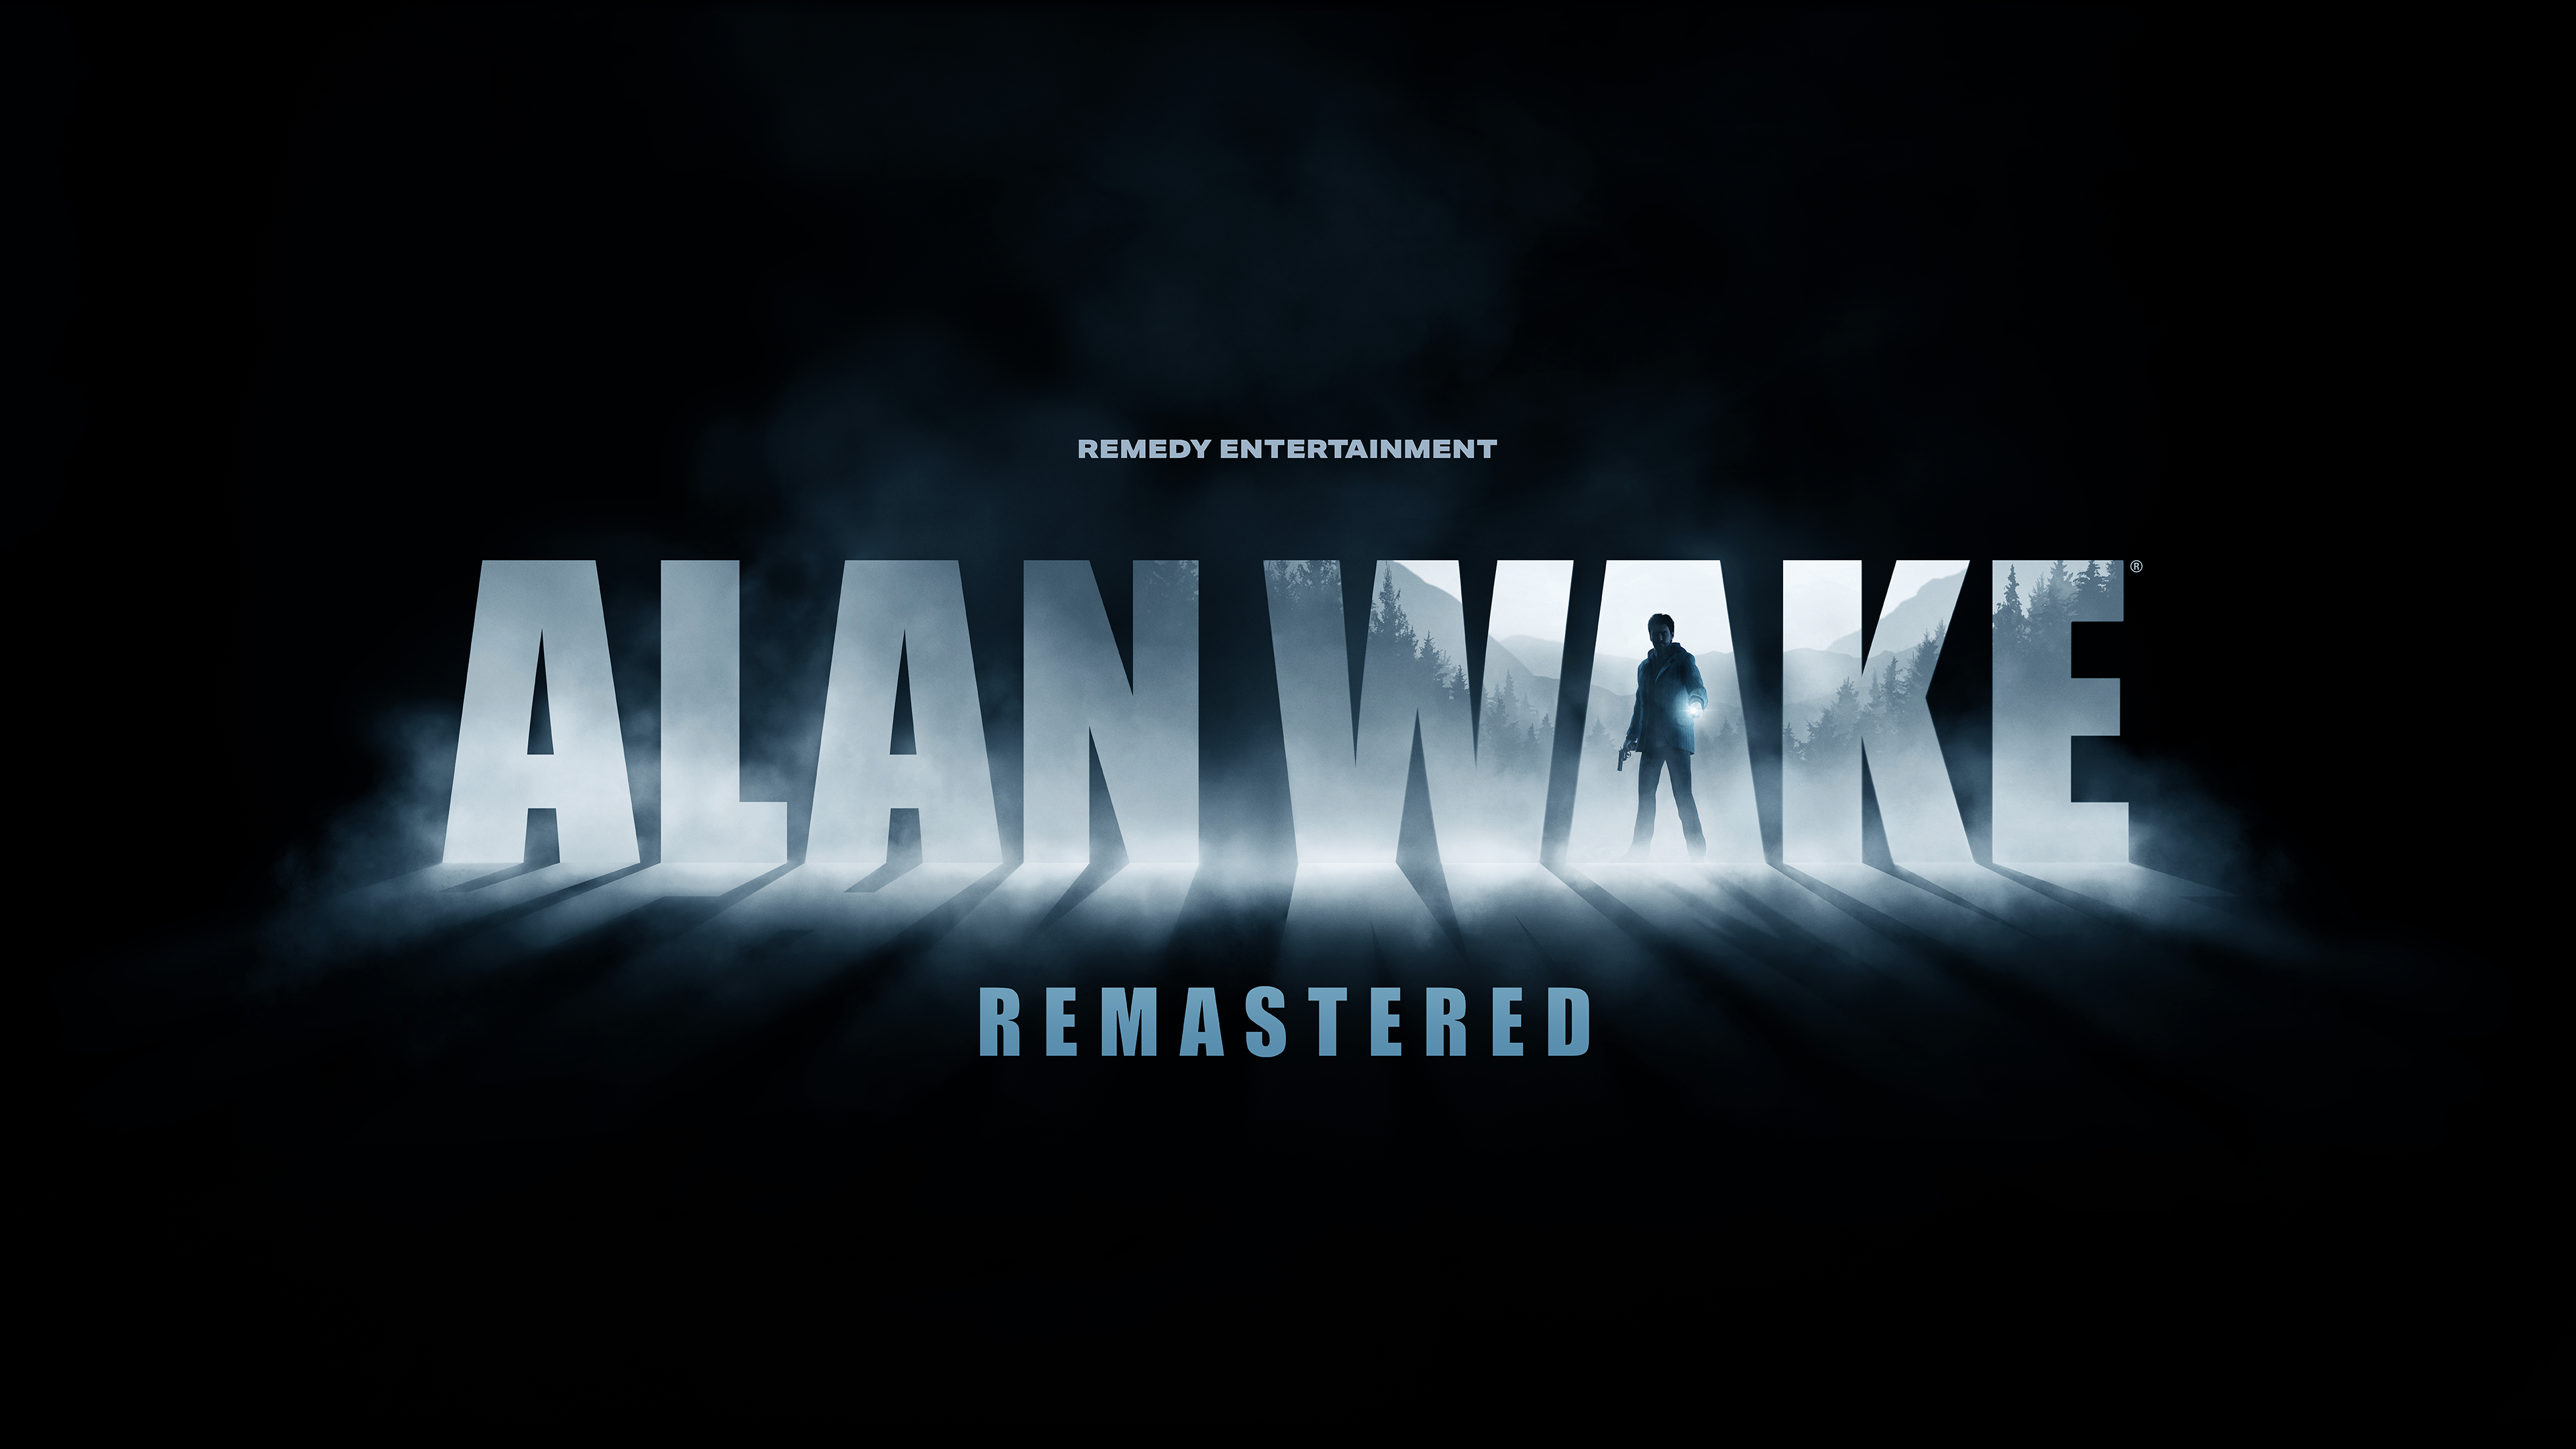 Video Game Alan Wake Remastered 4k Ultra HD Wallpaper